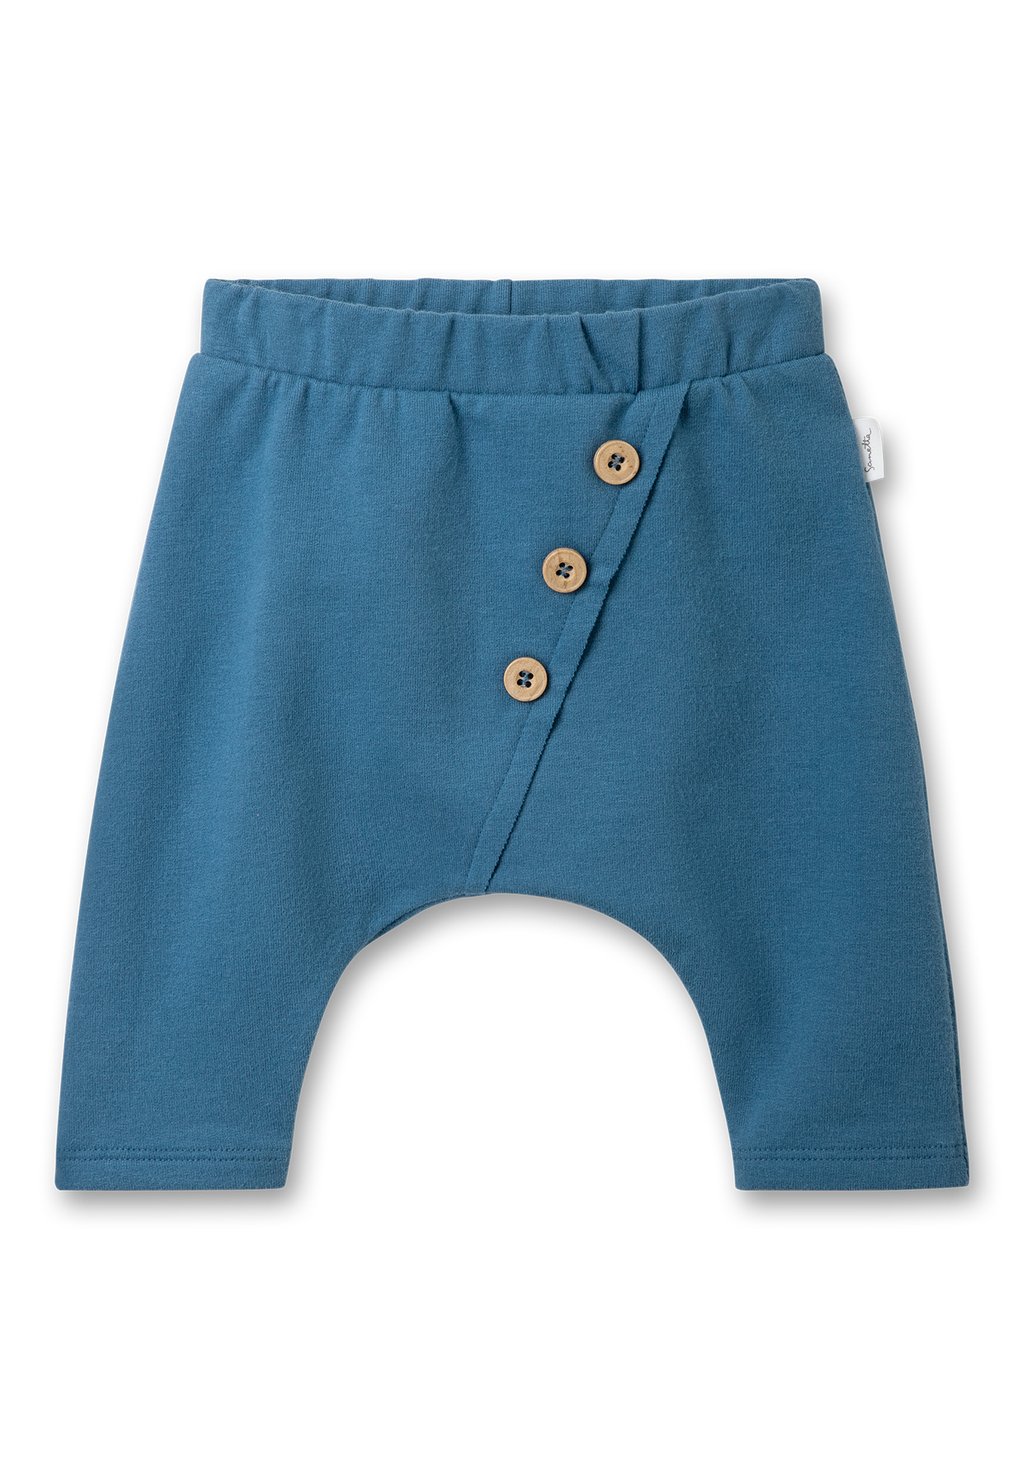 Брюки из ткани UNISEX Sanetta Pure, цвет blau брюки из ткани unisex sanetta pure цвет blau